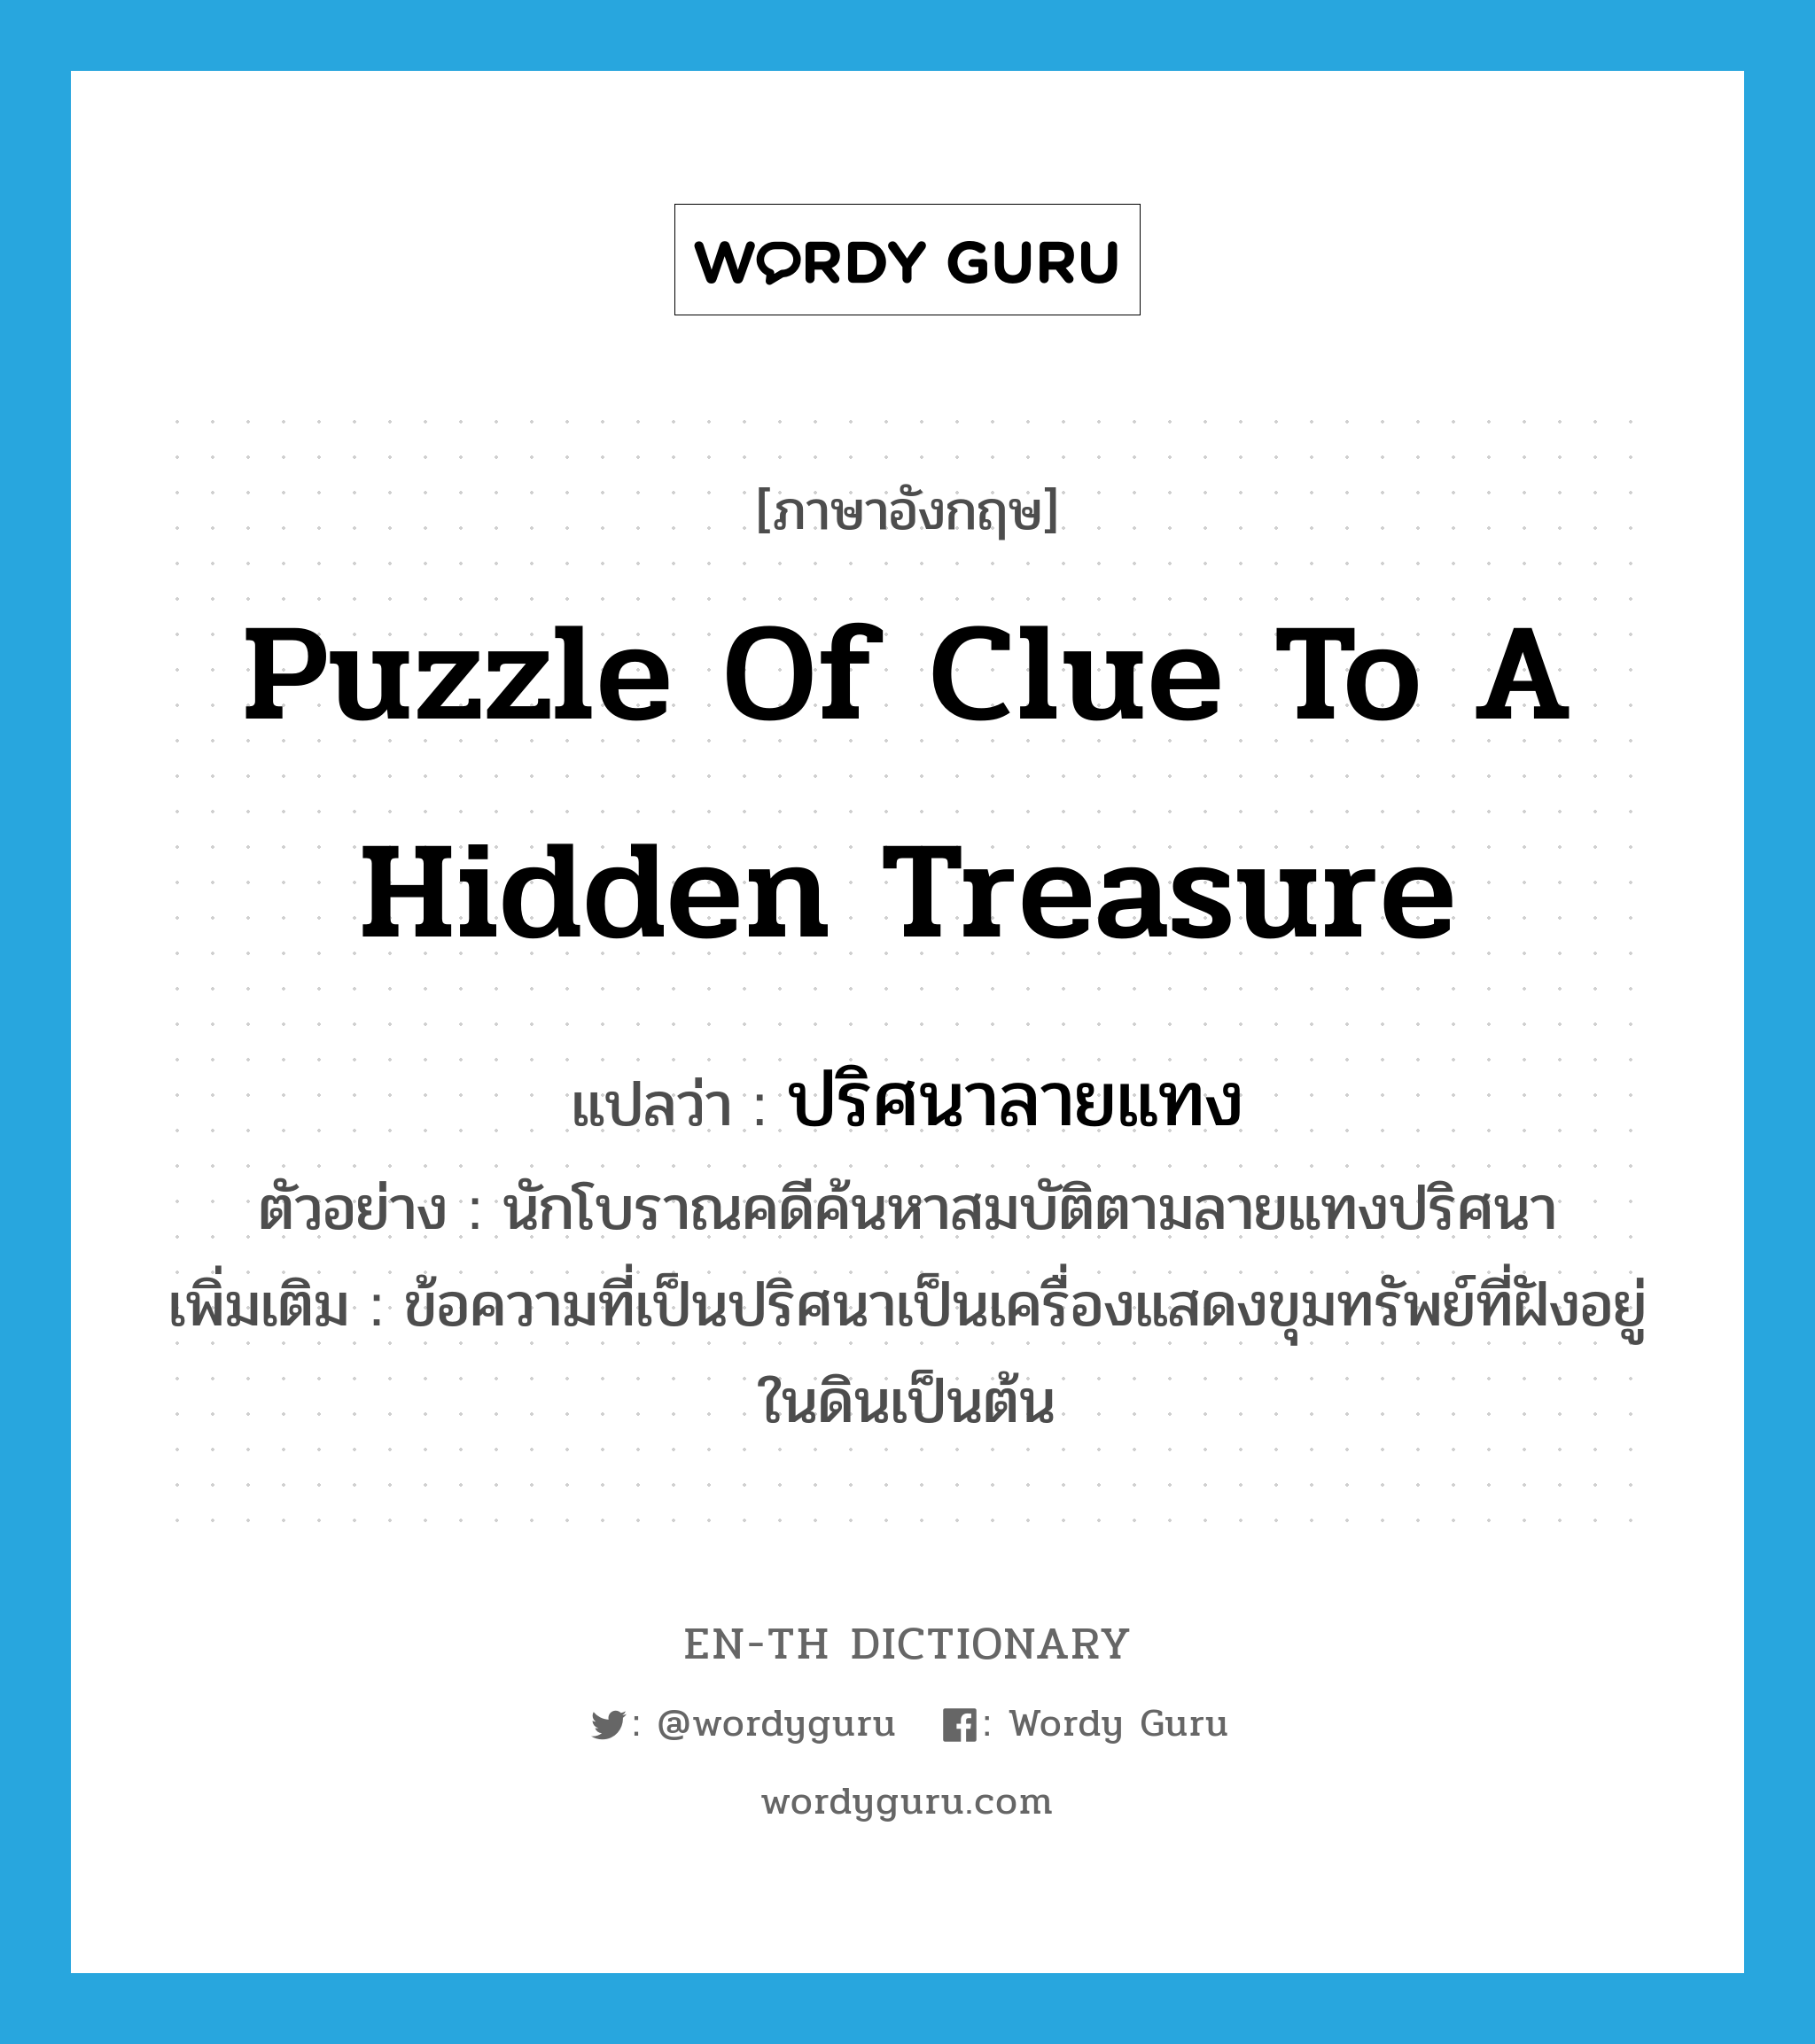 ปริศนาลายแทง ภาษาอังกฤษ?, คำศัพท์ภาษาอังกฤษ ปริศนาลายแทง แปลว่า puzzle of clue to a hidden treasure ประเภท N ตัวอย่าง นักโบราณคดีค้นหาสมบัติตามลายแทงปริศนา เพิ่มเติม ข้อความที่เป็นปริศนาเป็นเครื่องแสดงขุมทรัพย์ที่ฝังอยู่ในดินเป็นต้น หมวด N